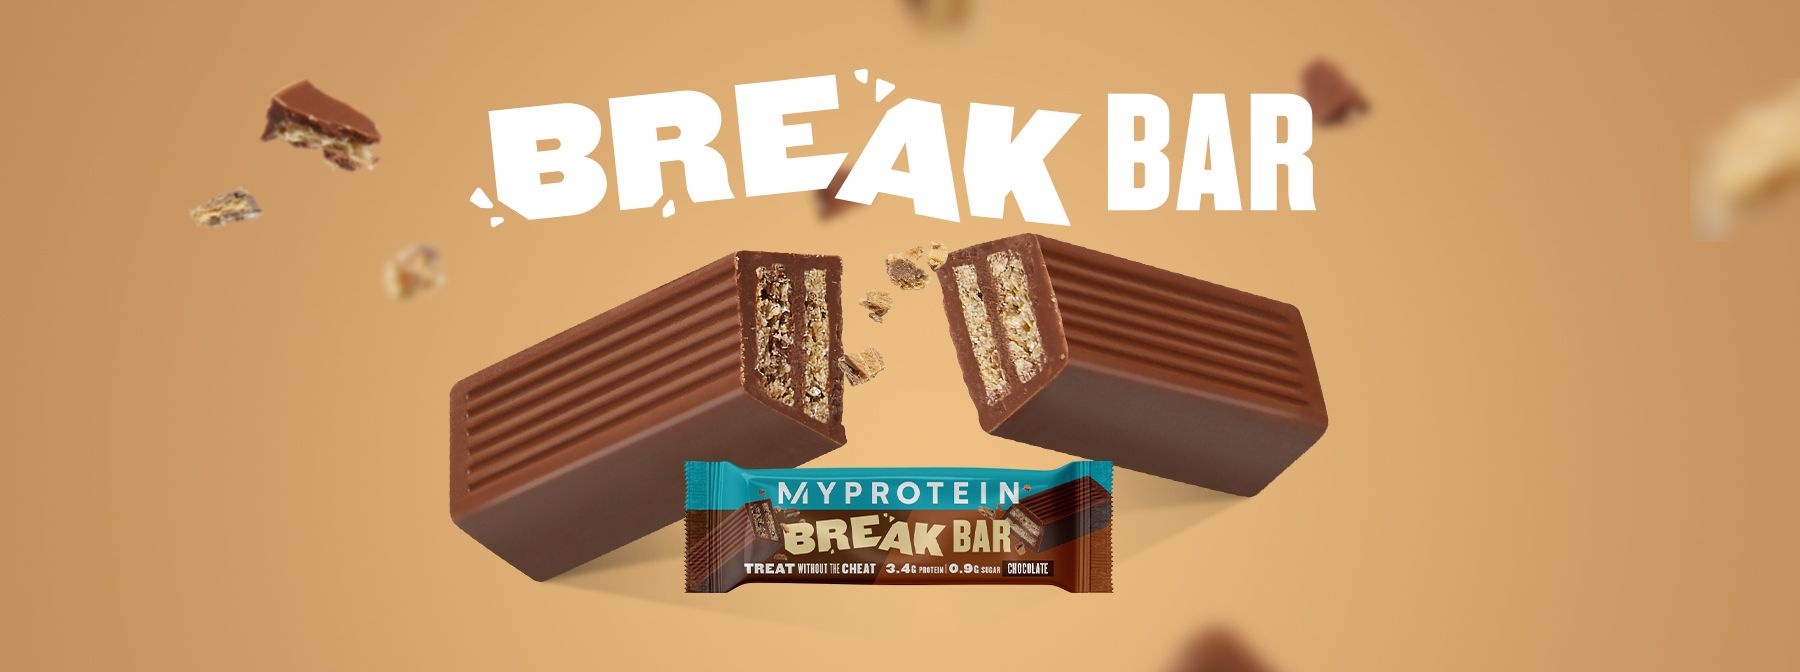 Break Bar: Pochi zuccheri, poche calorie per uno snack unico!